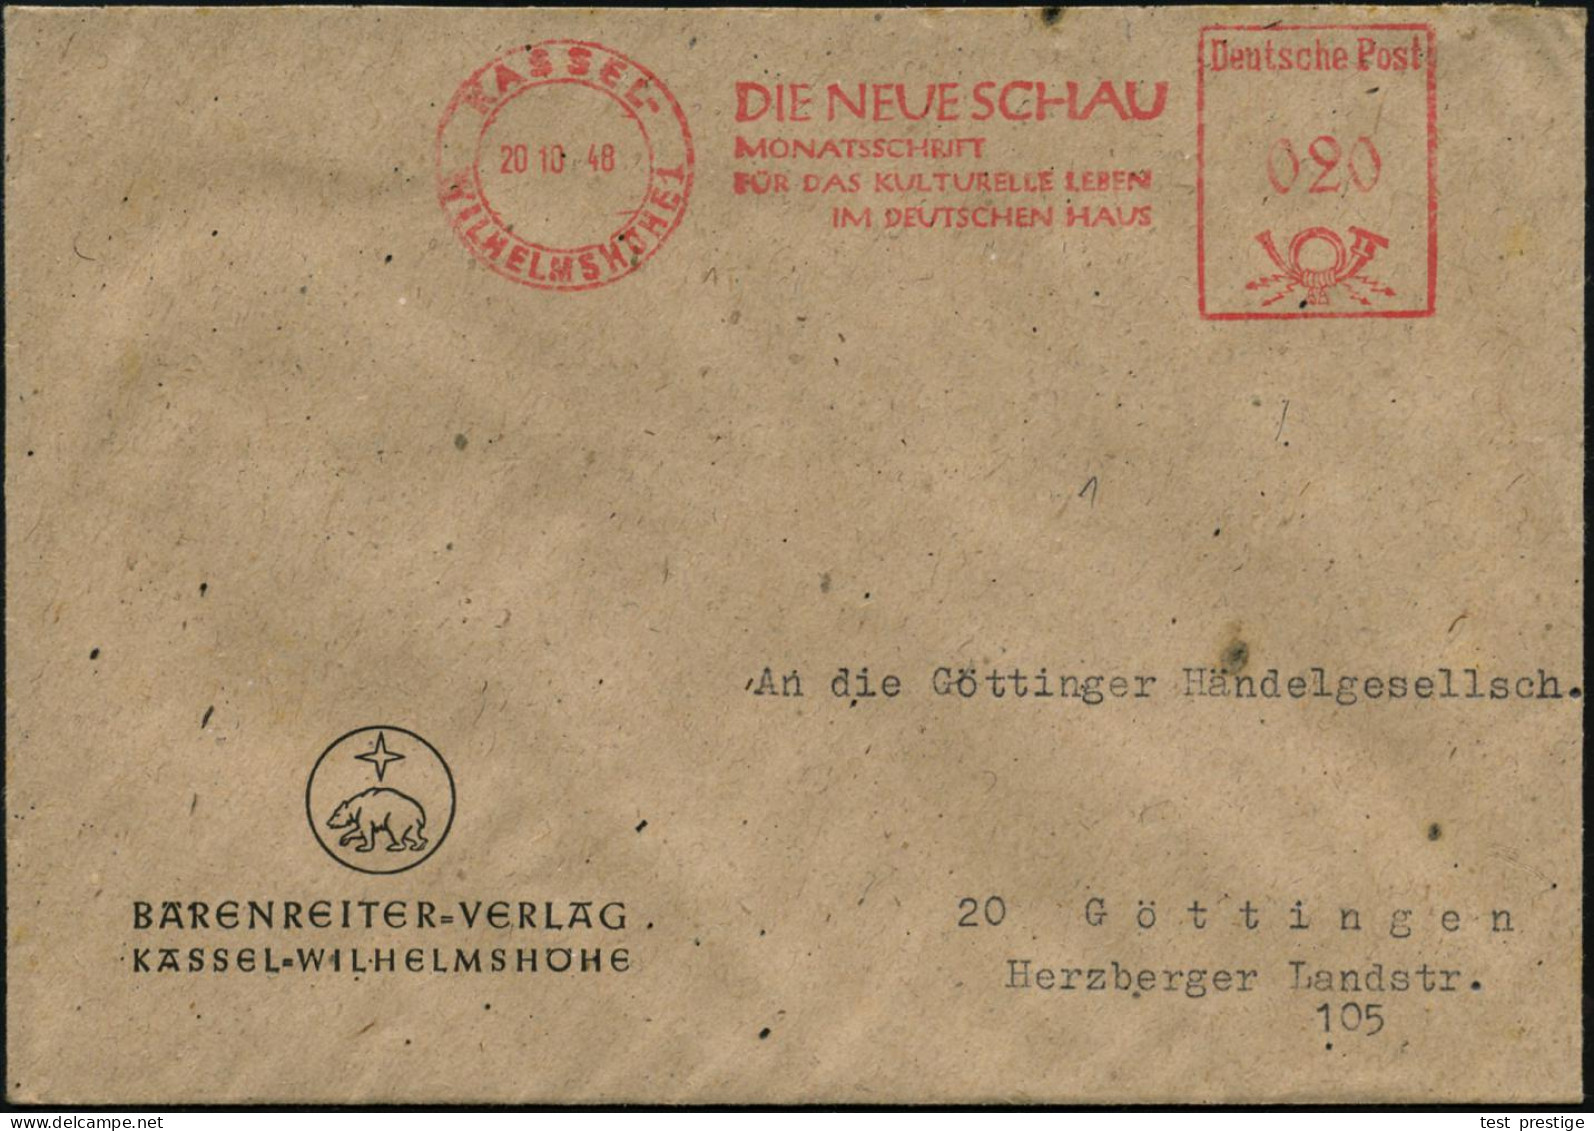 KASSEL-/ WILHELMSHÖHE 1/ DIE NEUE SCHAUMONATSZEITSCHRIFT... 1948 (20.10.) AFS Francotyp "Posthorn - Deutsche Post" Auf F - Musik